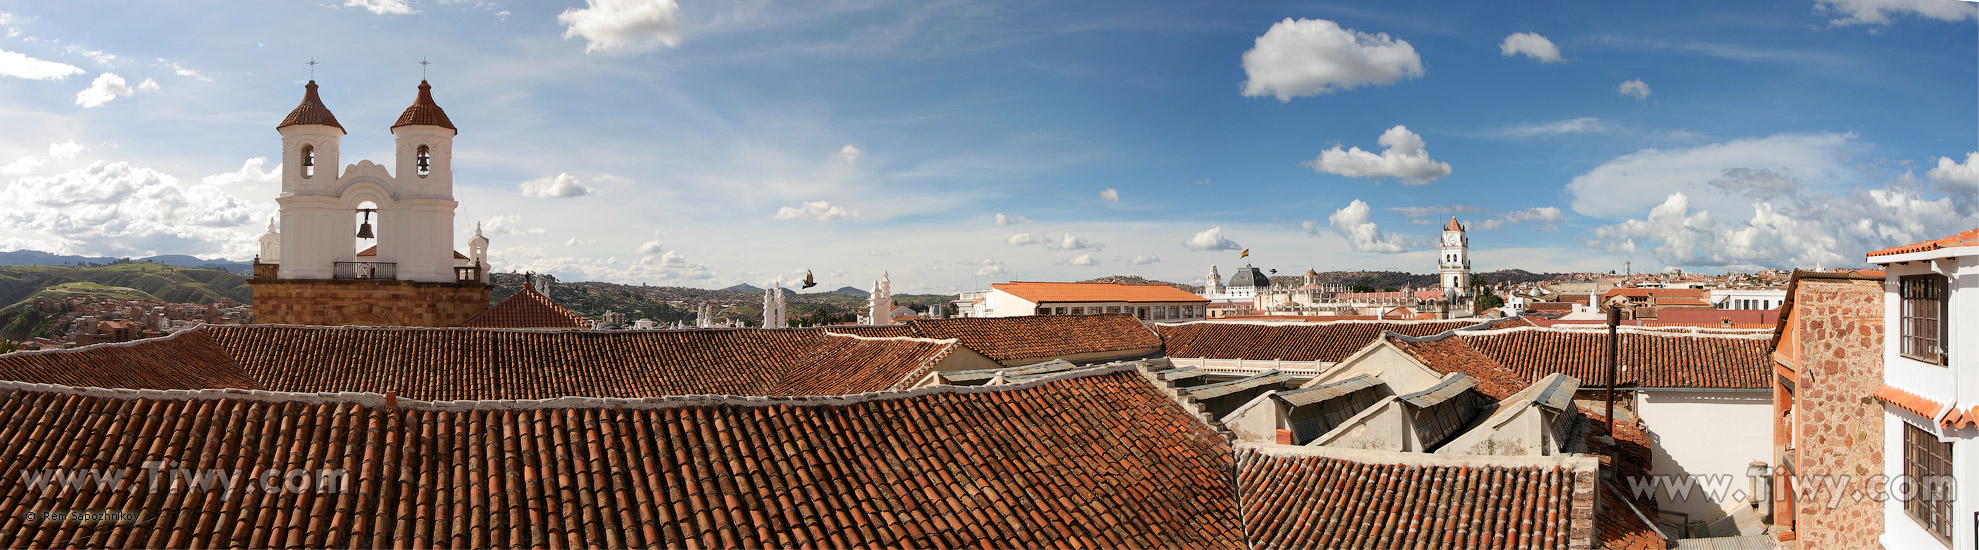 Романтический вид с крыши Hostal de su Merced